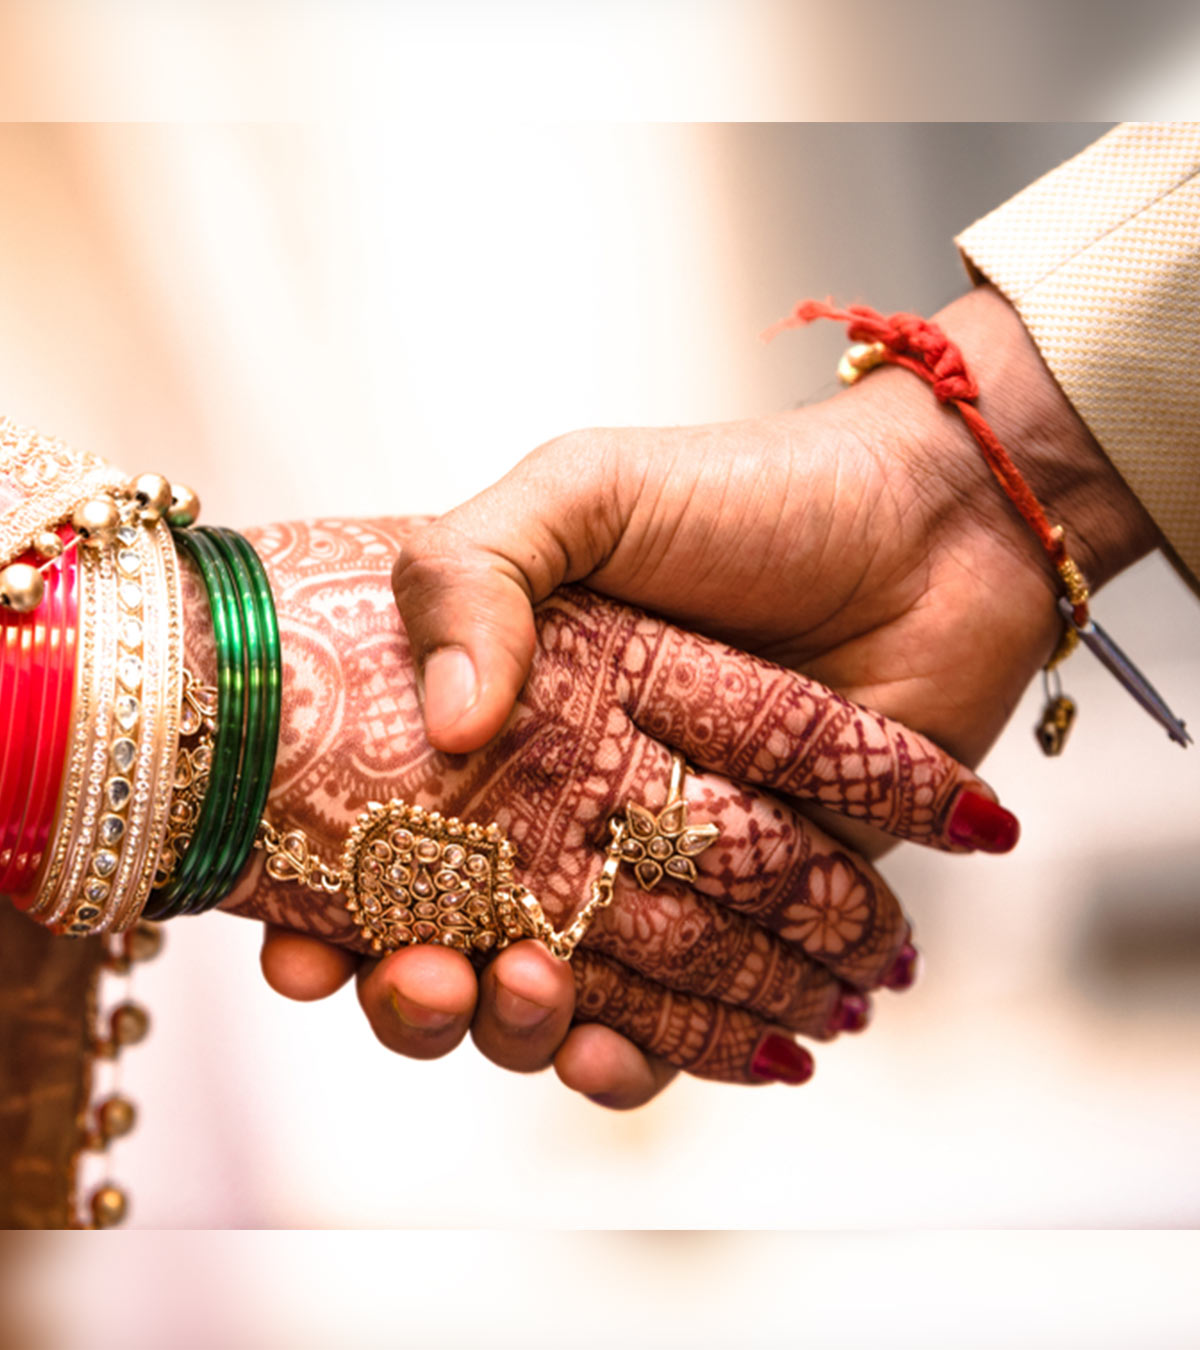 100+ शादी / विवाह पर बेस्ट कोट्स, स्टेटस व शायरी | Marriage Quotes, Status And Shayari In Hindi